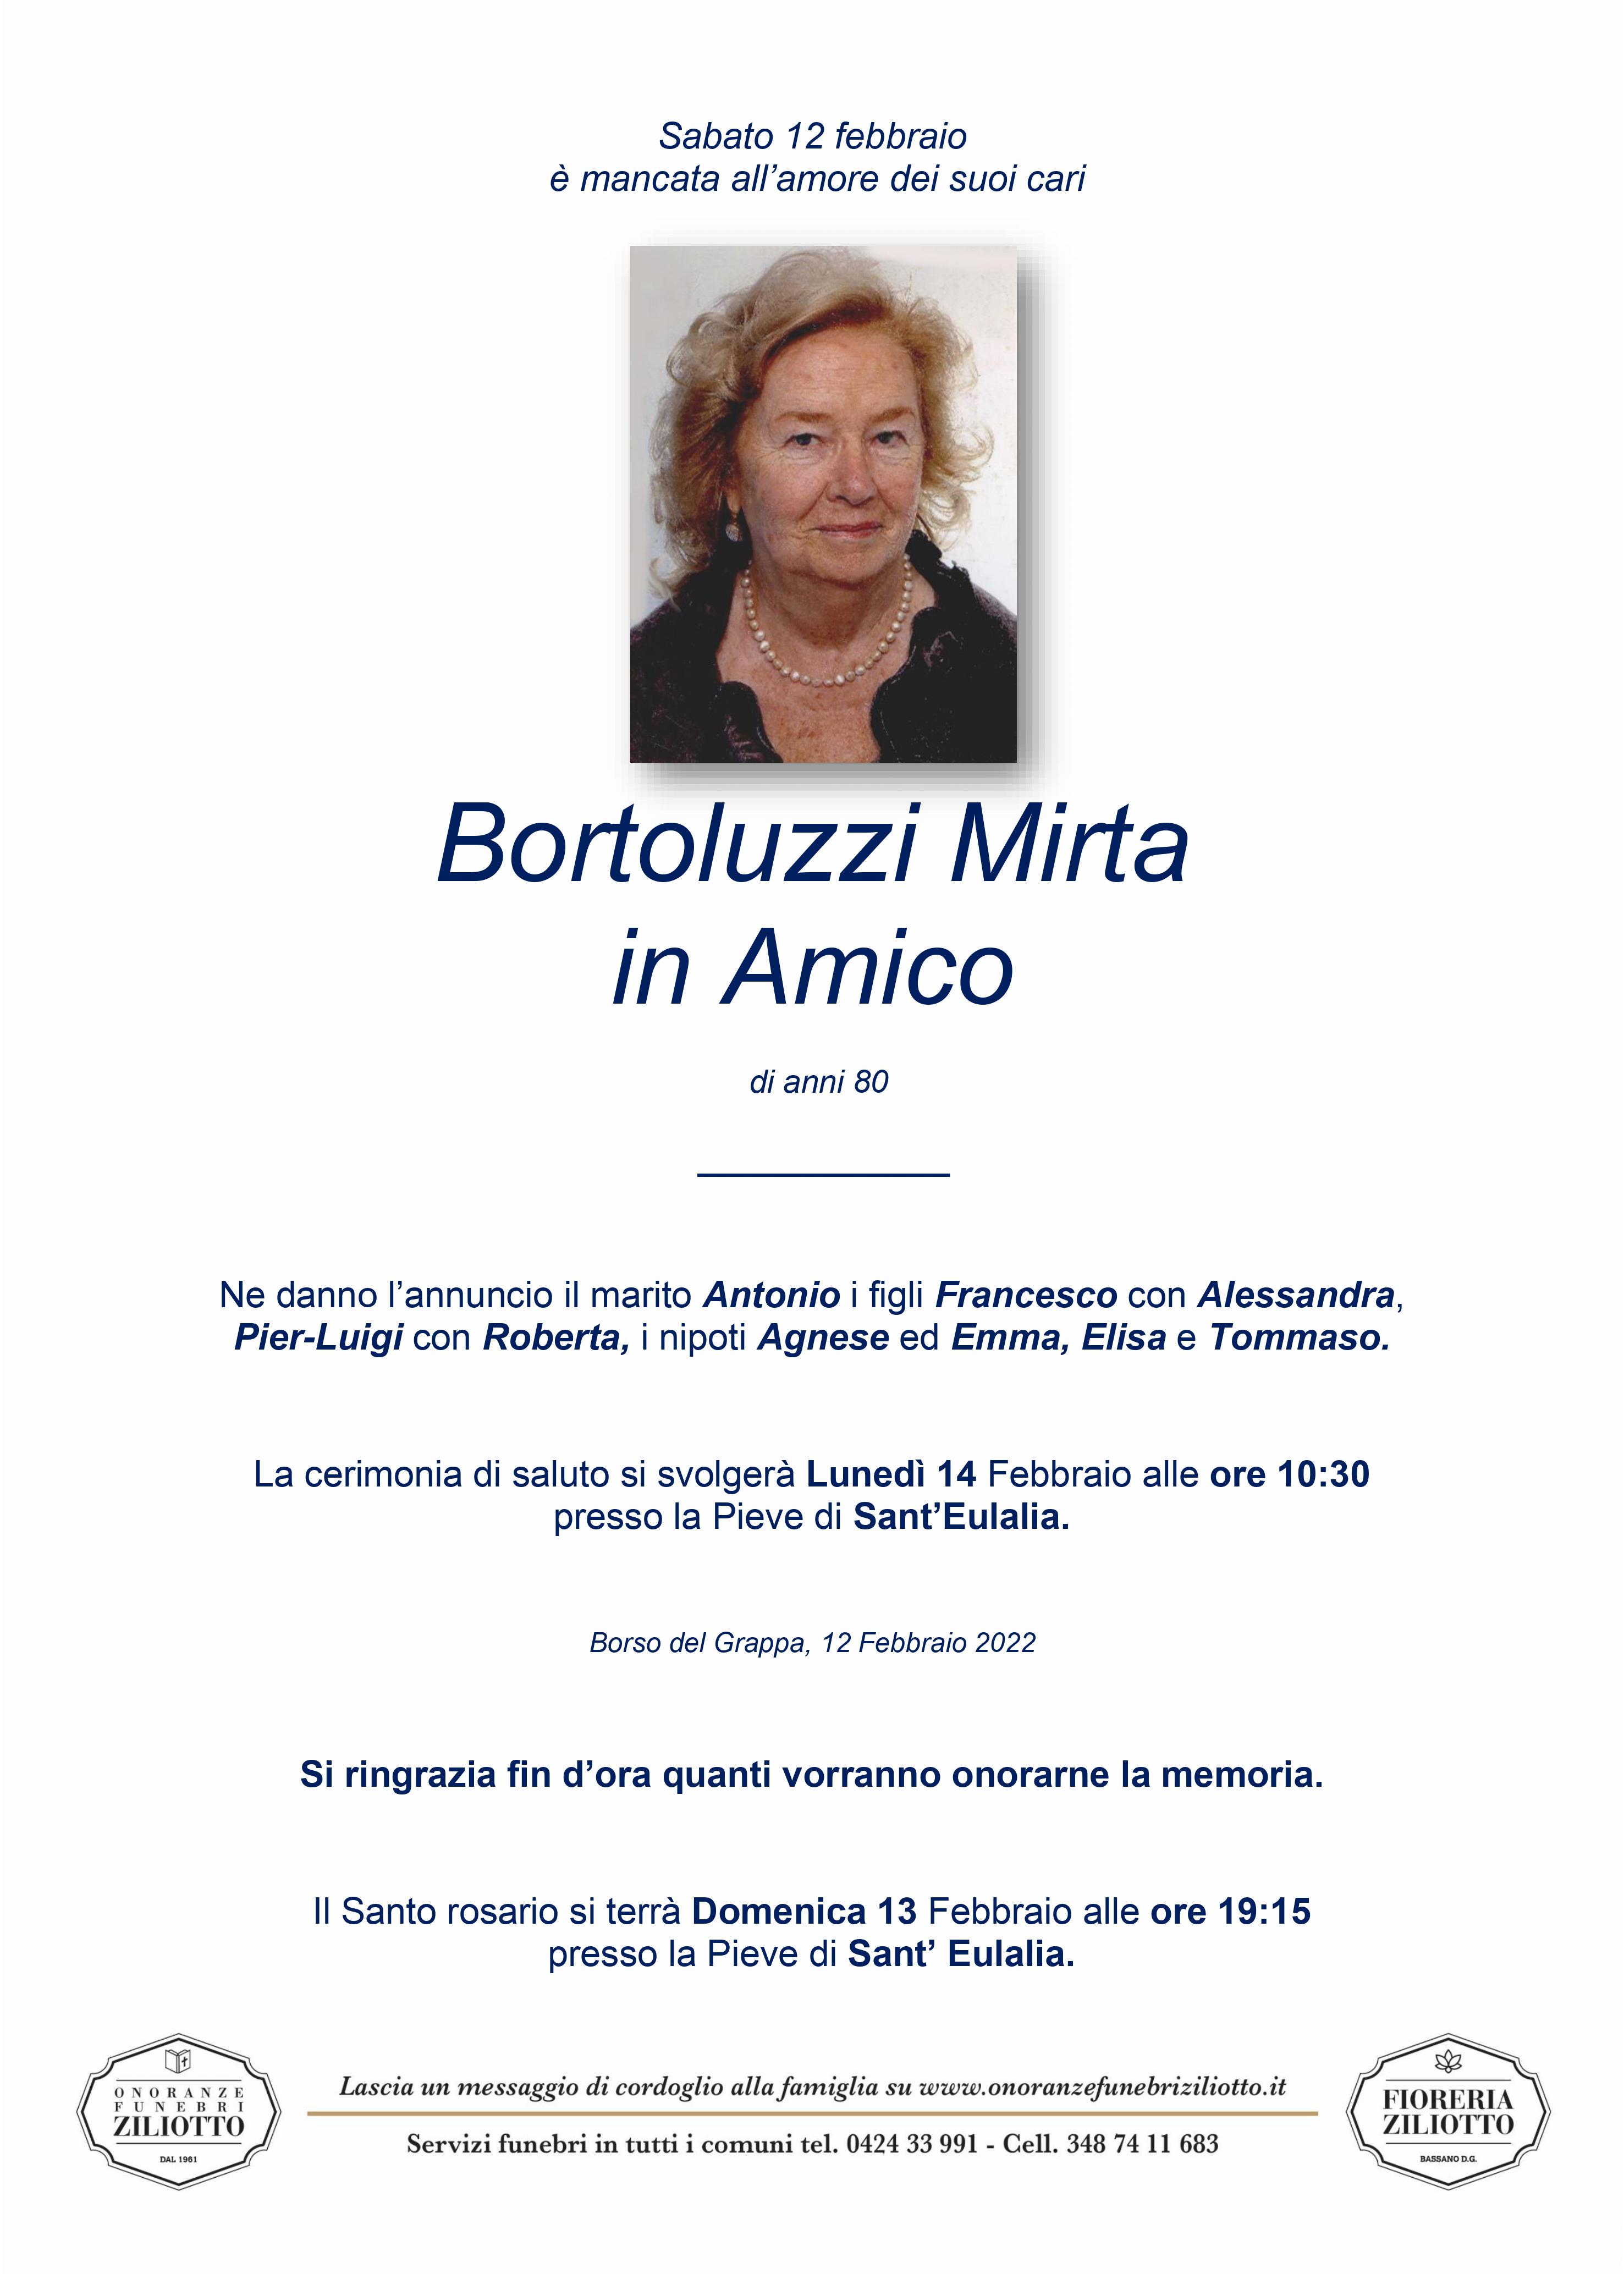 Mirta Bortoluzzi - 80 anni - Sant' Eulalia